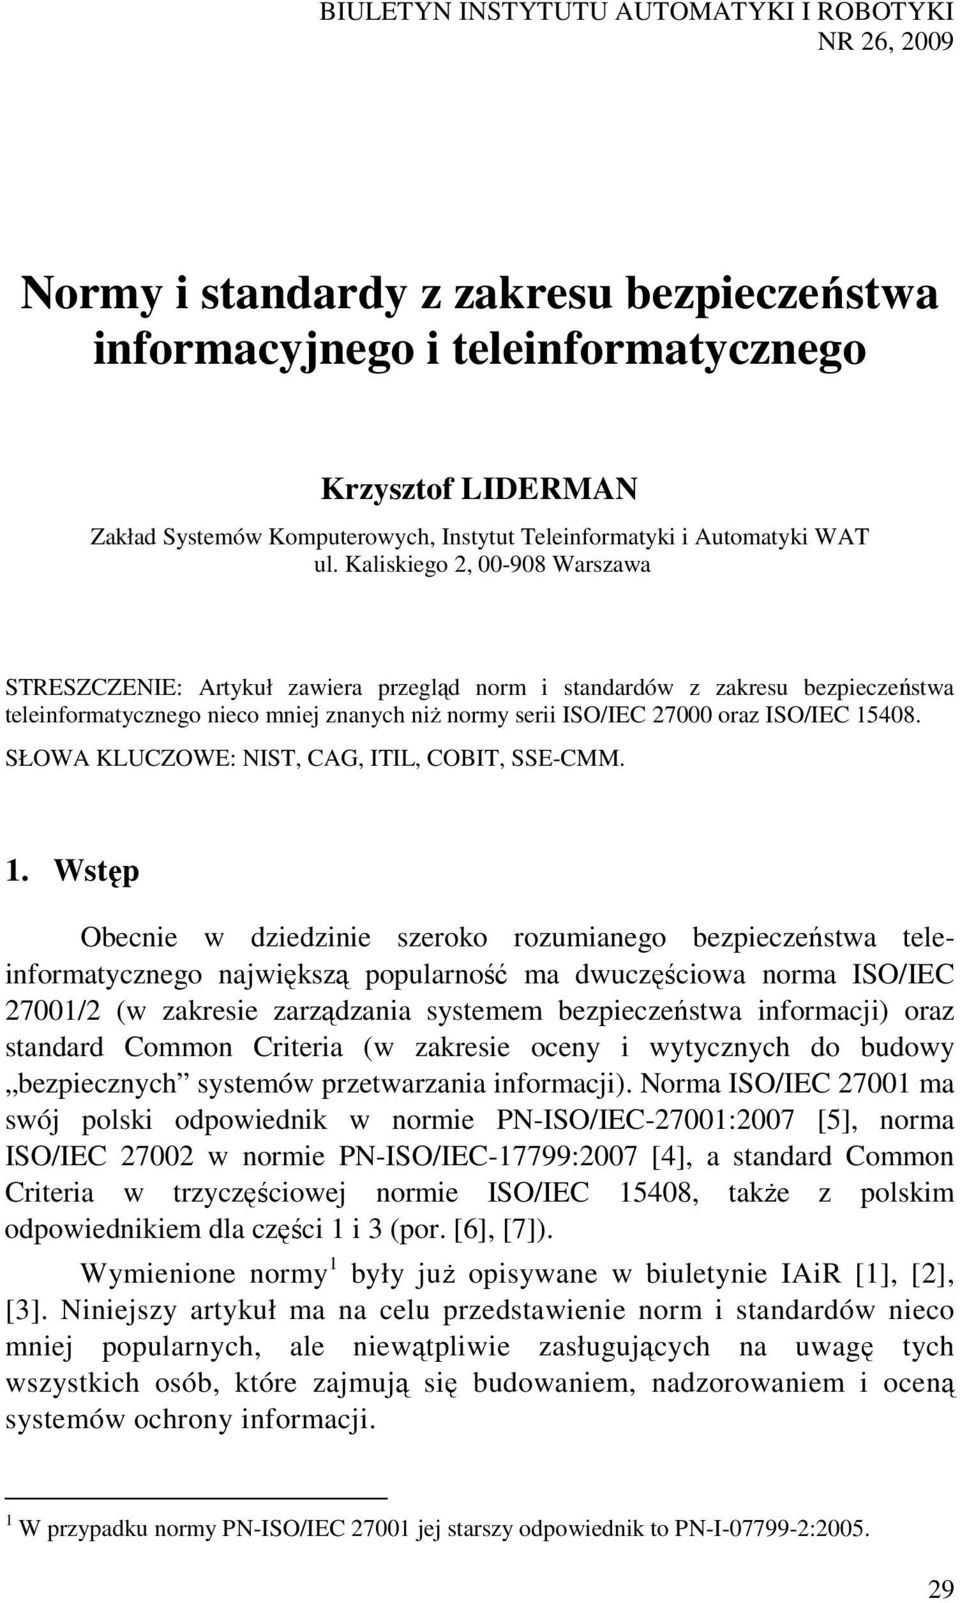 Kaliskiego 2, 00-908 Warszawa STRESZCZENIE: Artykuł zawiera przegląd norm i standardów z zakresu bezpieczeństwa teleinformatycznego nieco mniej znanych niż normy serii ISO/IEC 27000 oraz ISO/IEC